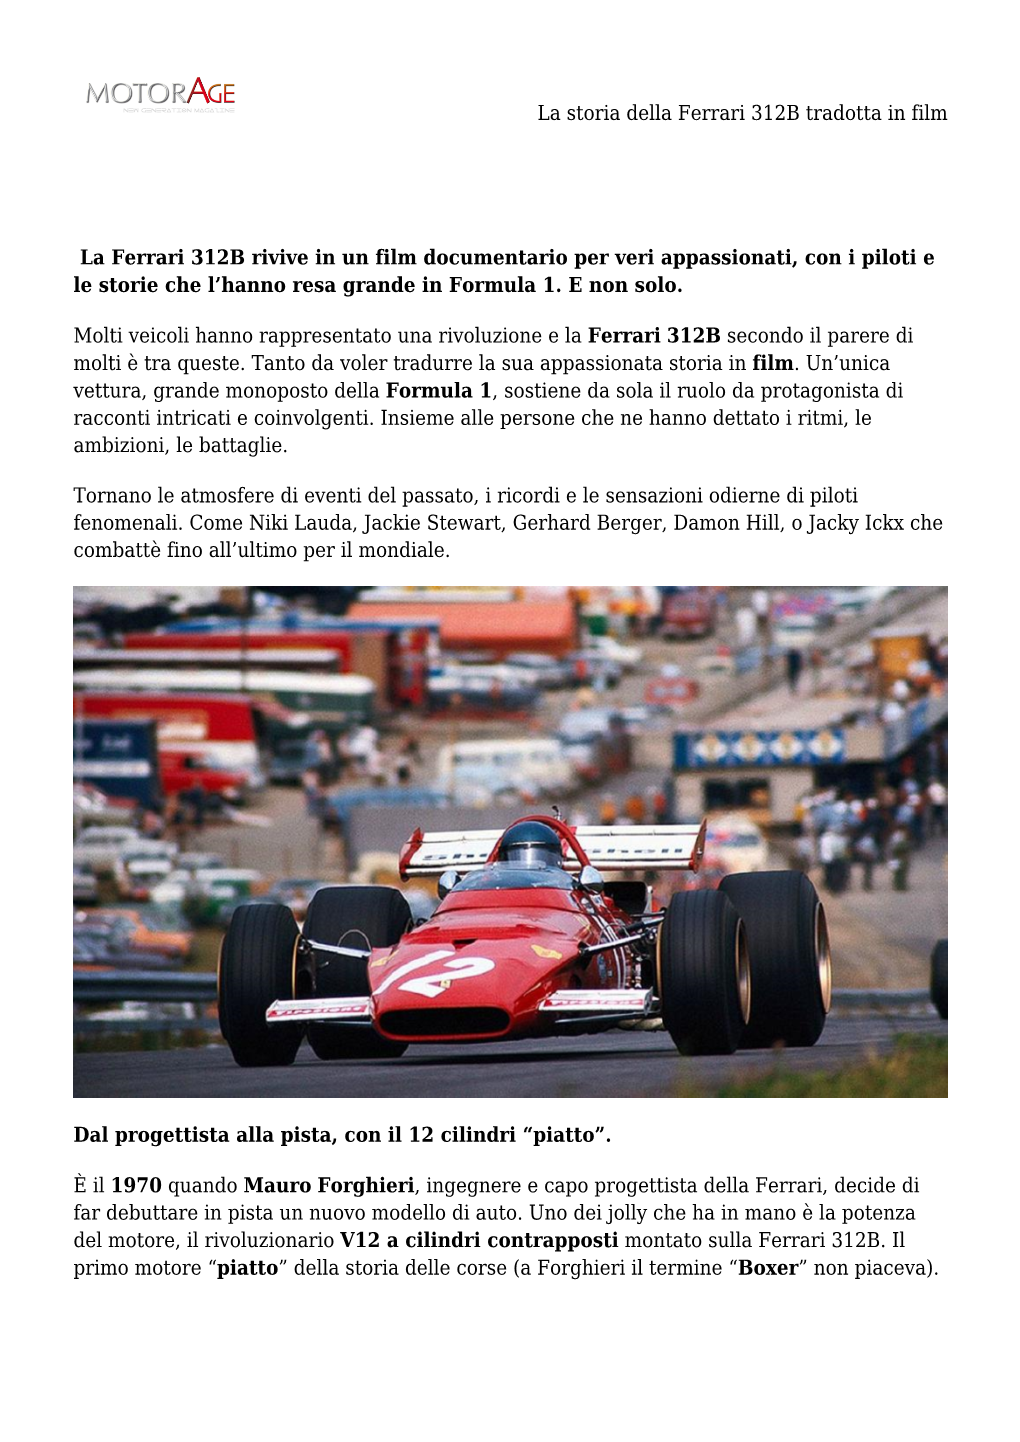 La Storia Della Ferrari 312B Tradotta in Film